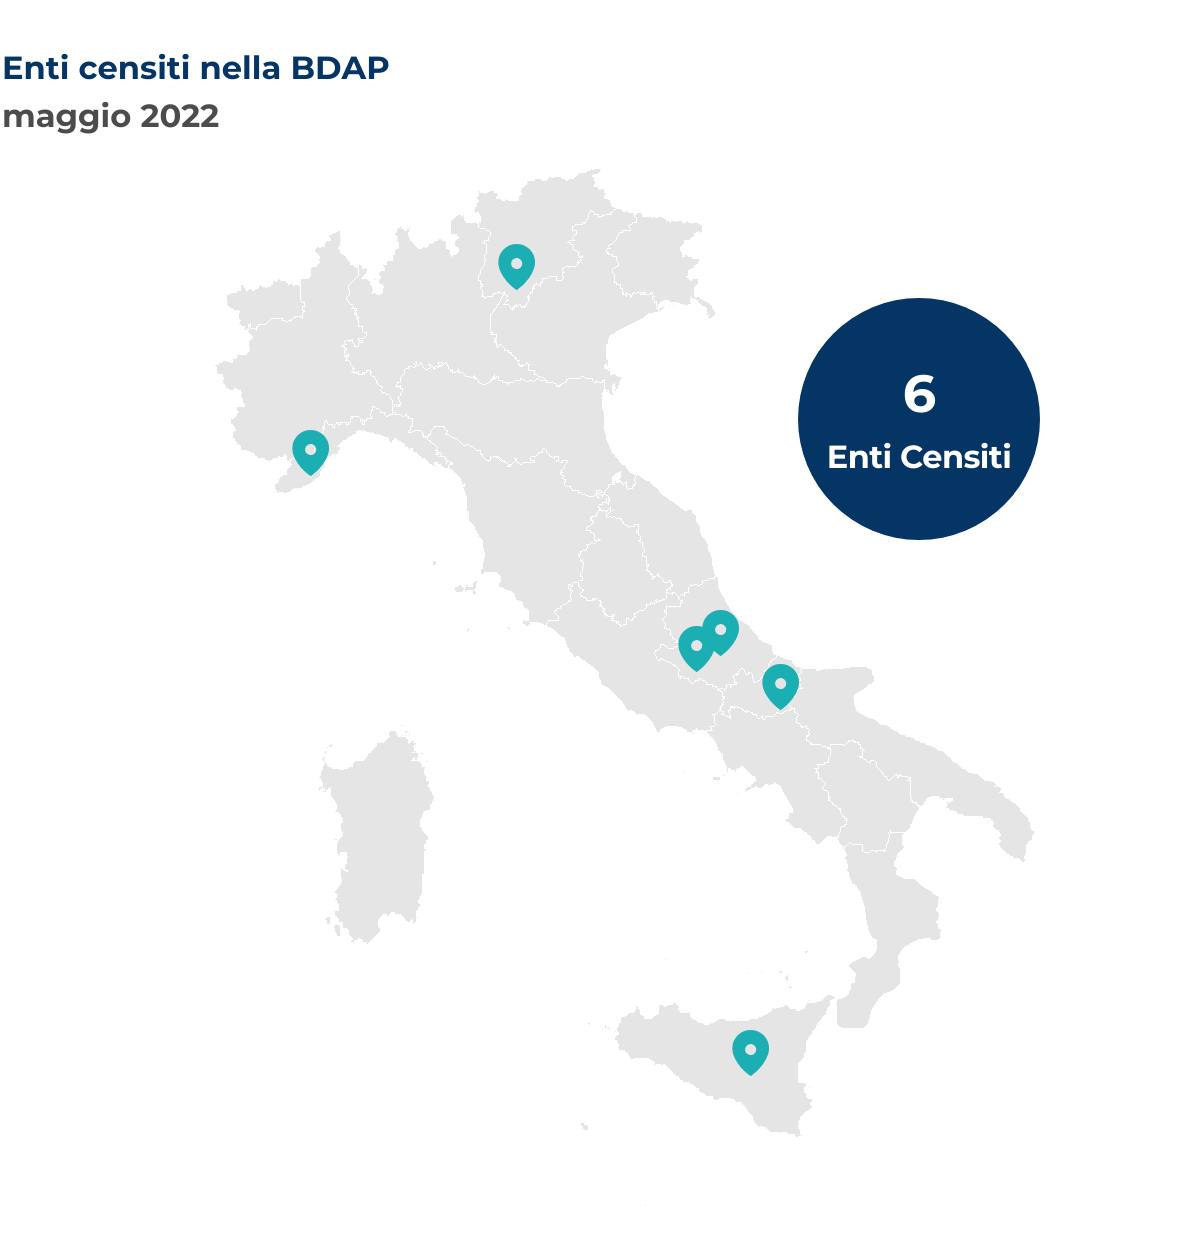 Mappa dell’Italia che mostra la localizzazione per Comune degli enti censiti nella BDAP nel mese di maggio 2022.